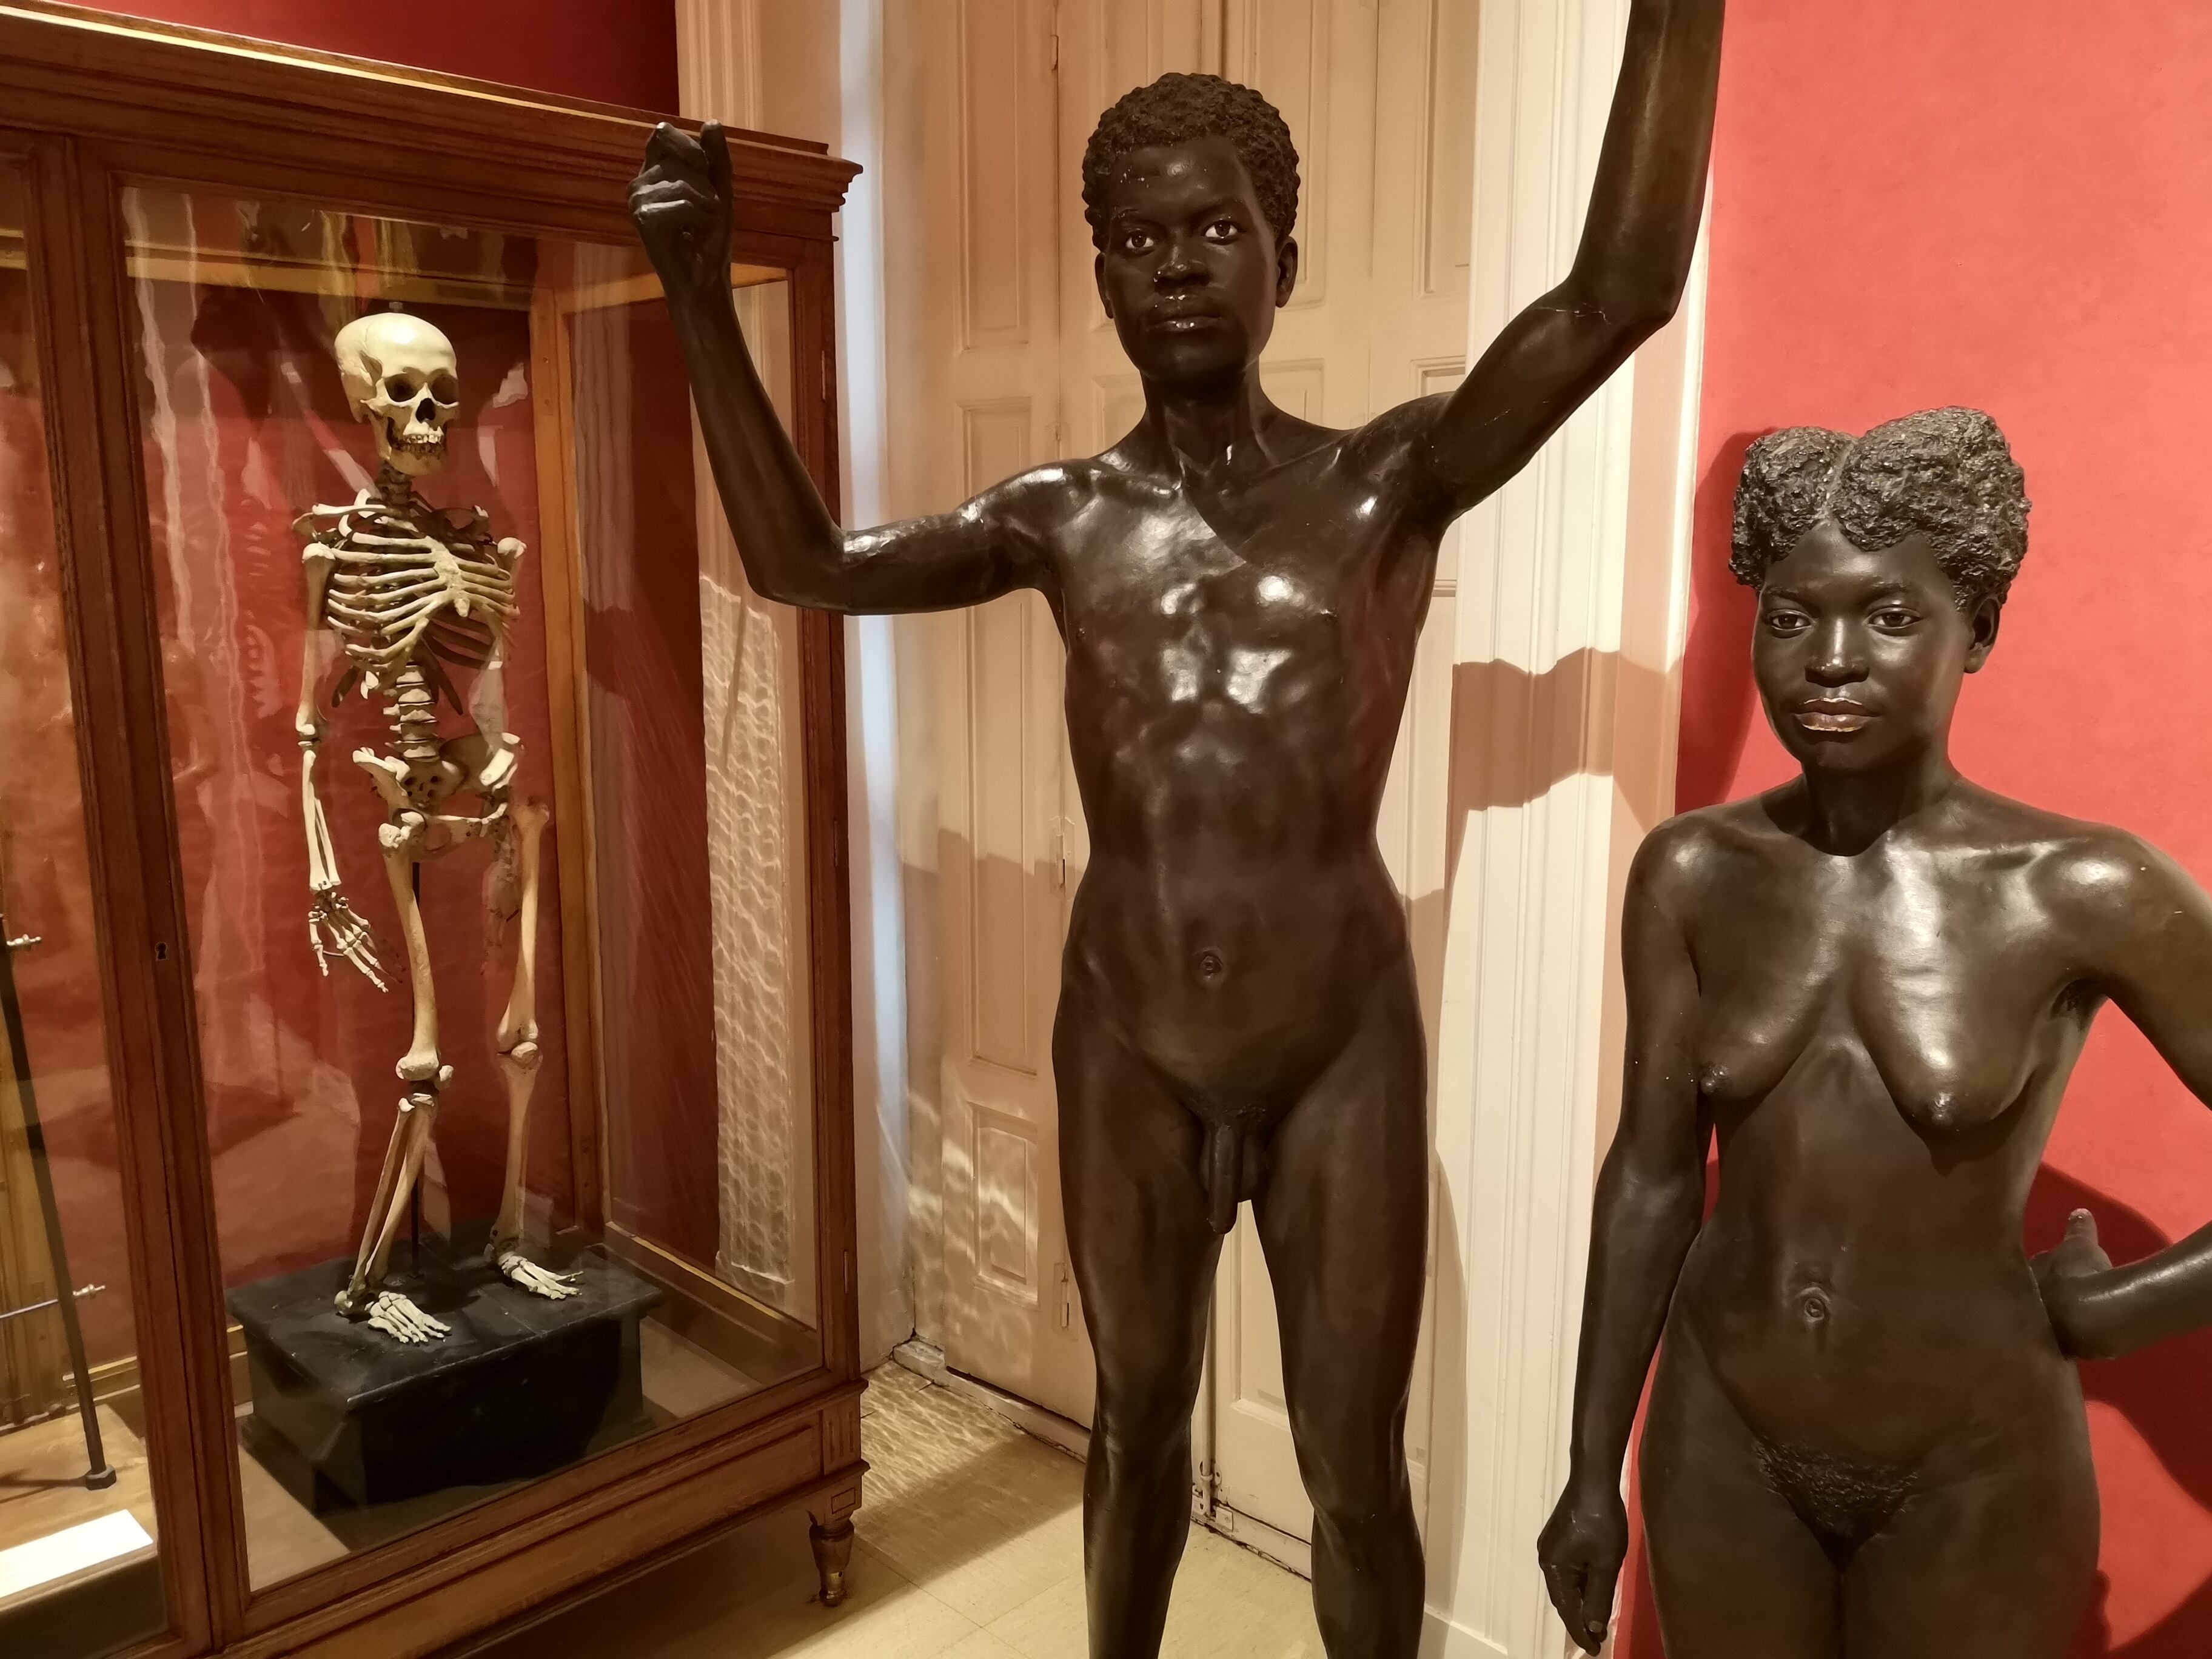 El esqueleto de una mujer filipina expuesto en el Museo Nacional de Antropología, junto a dos estatuas de yeso decimonónicas de dos personas de Guinea Ecuatorial.